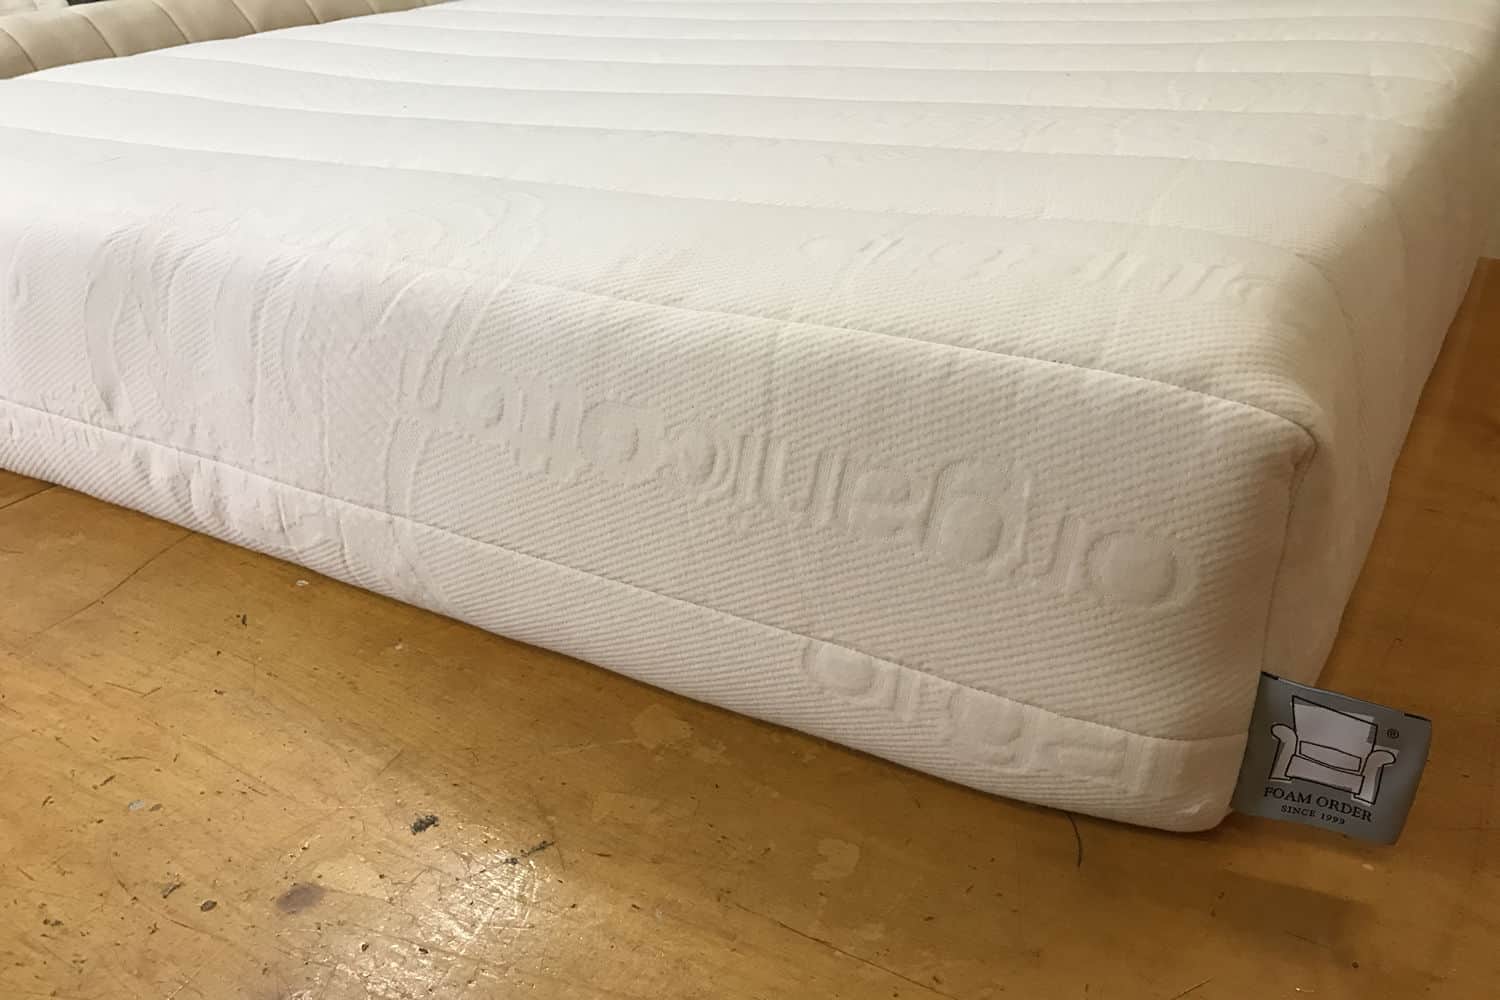 https://www.foamorder.com/img/products/latex-mattress/latex-mattress-hero.jpg